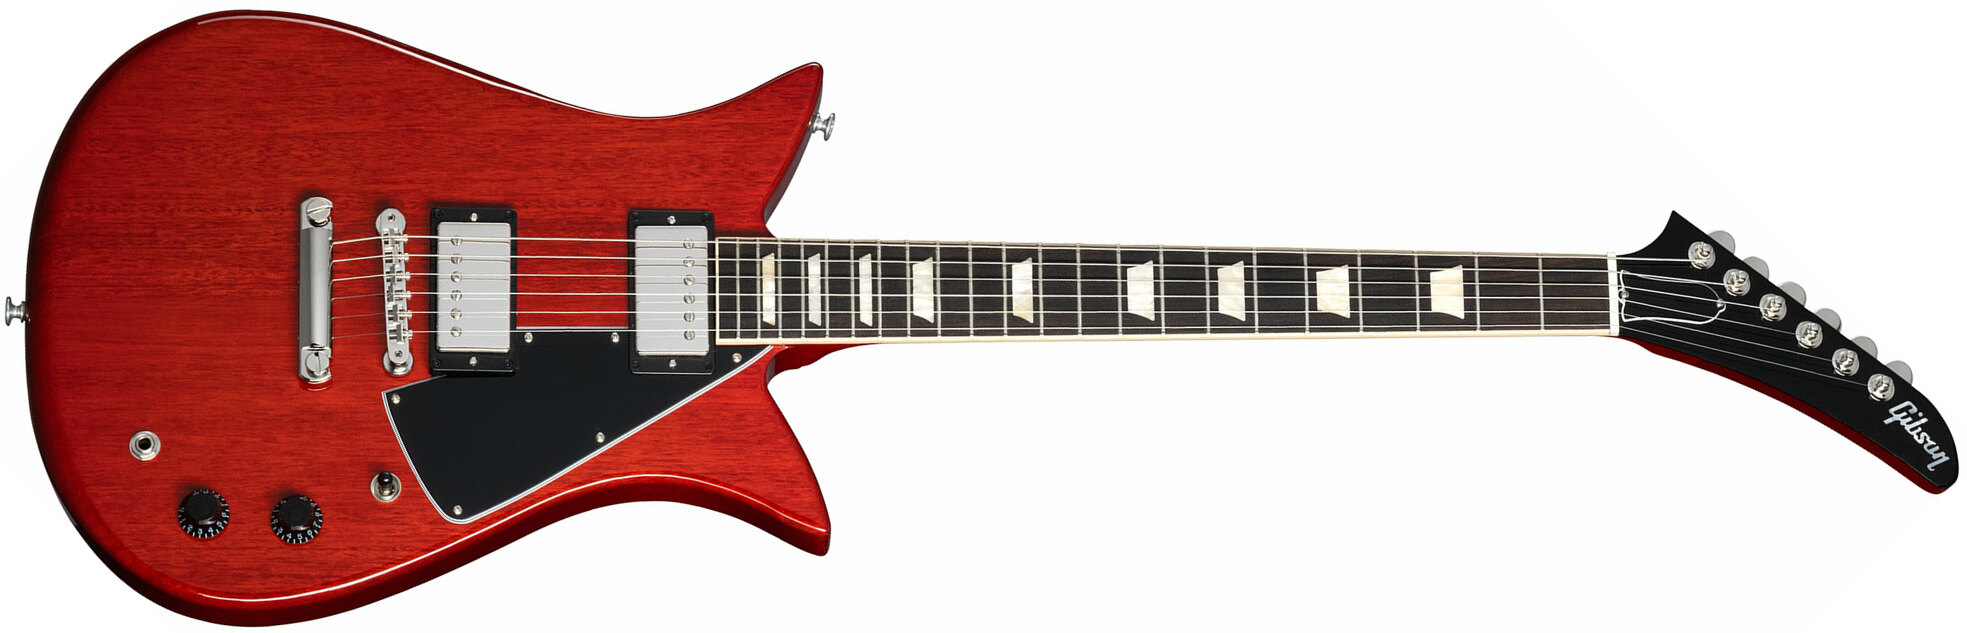 Gibson Theodore Standard Original 2h Ht Rw - Vintage Cherry - Retro-rock elektrische gitaar - Main picture